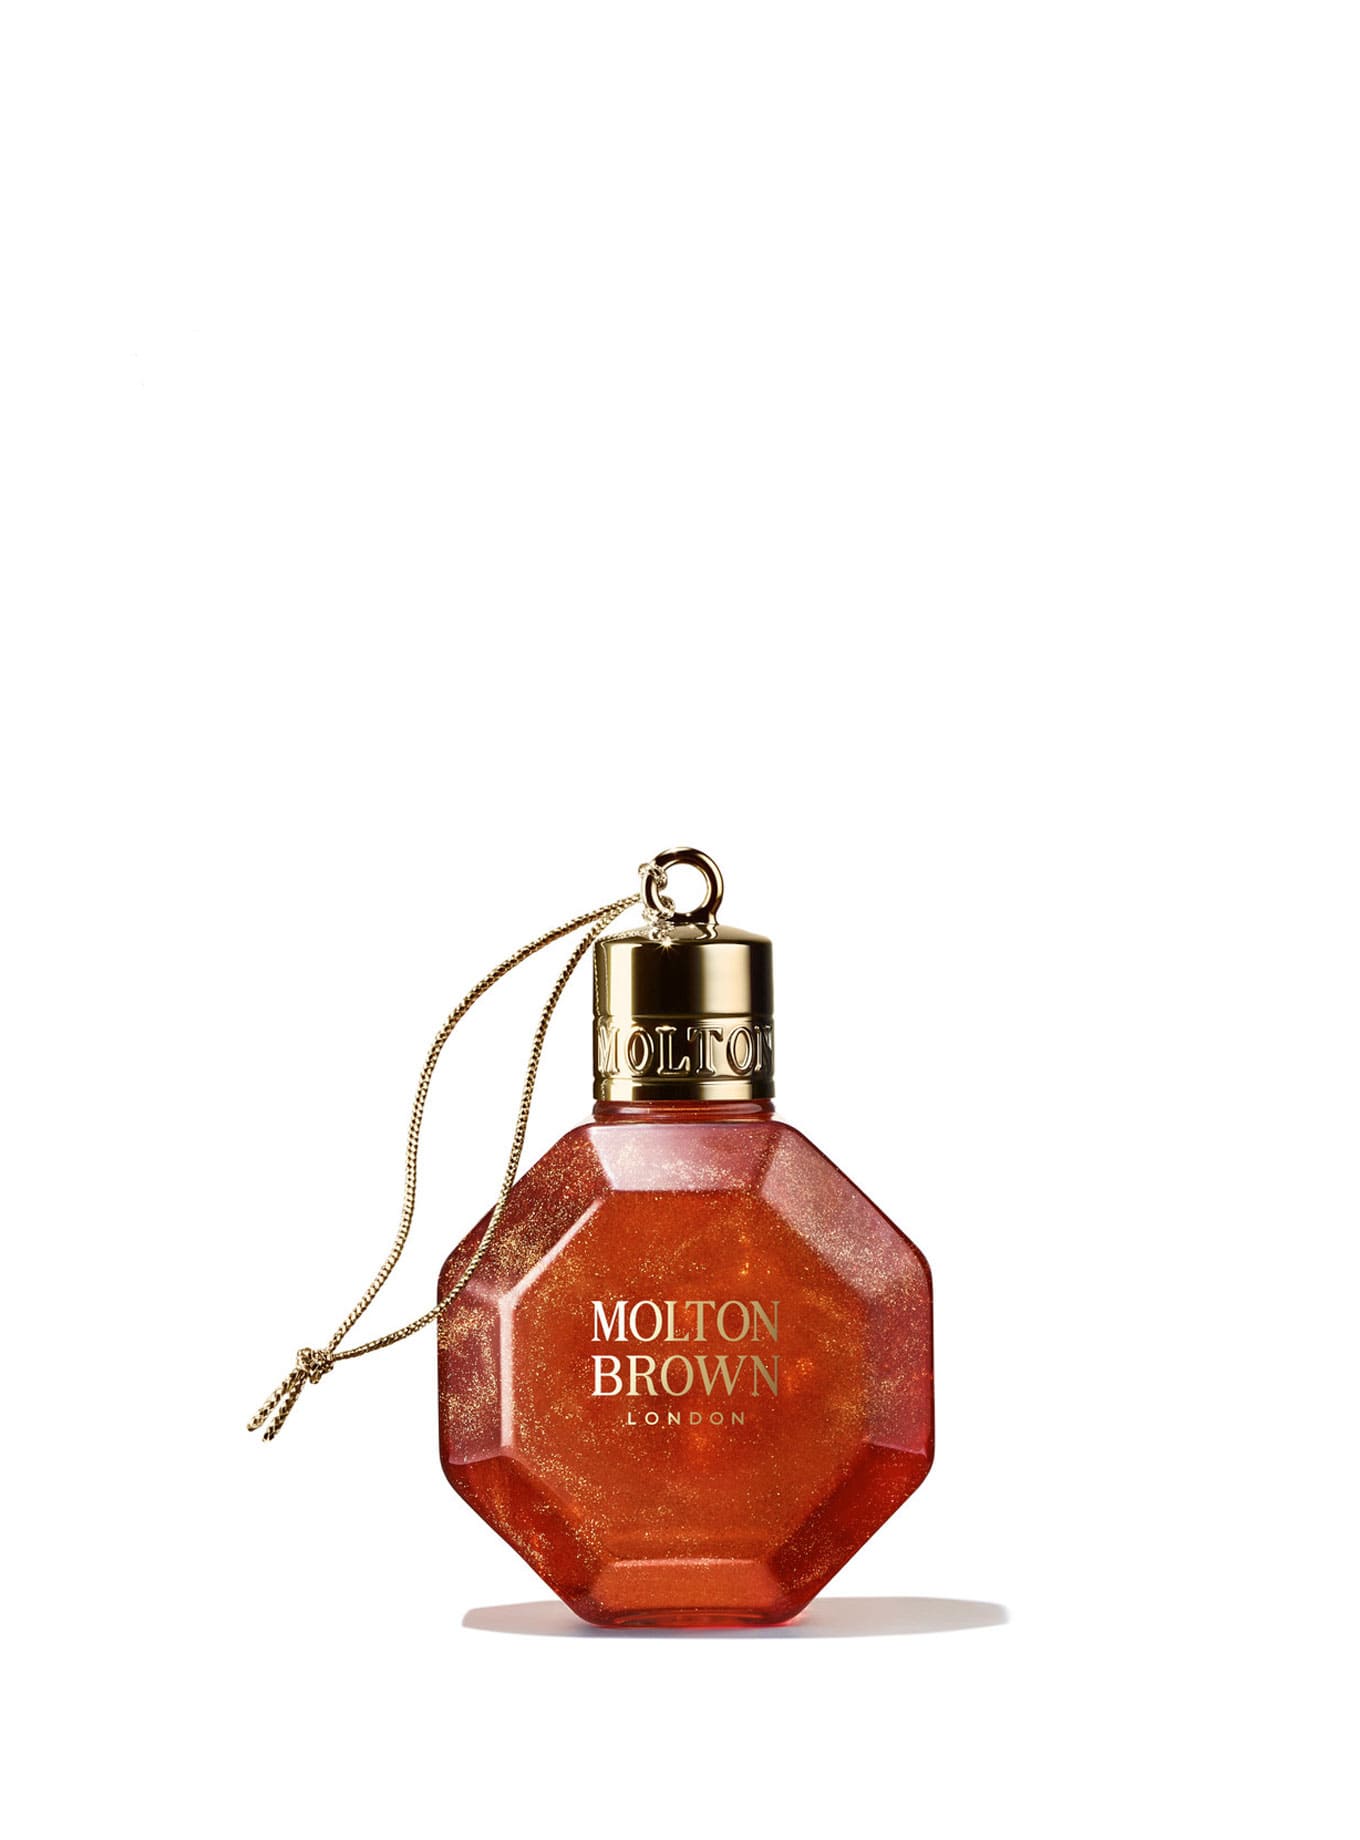 Bauble de Molton Brown con aroma de mandarina y especias. Adorno navideño lujoso y ecológico.